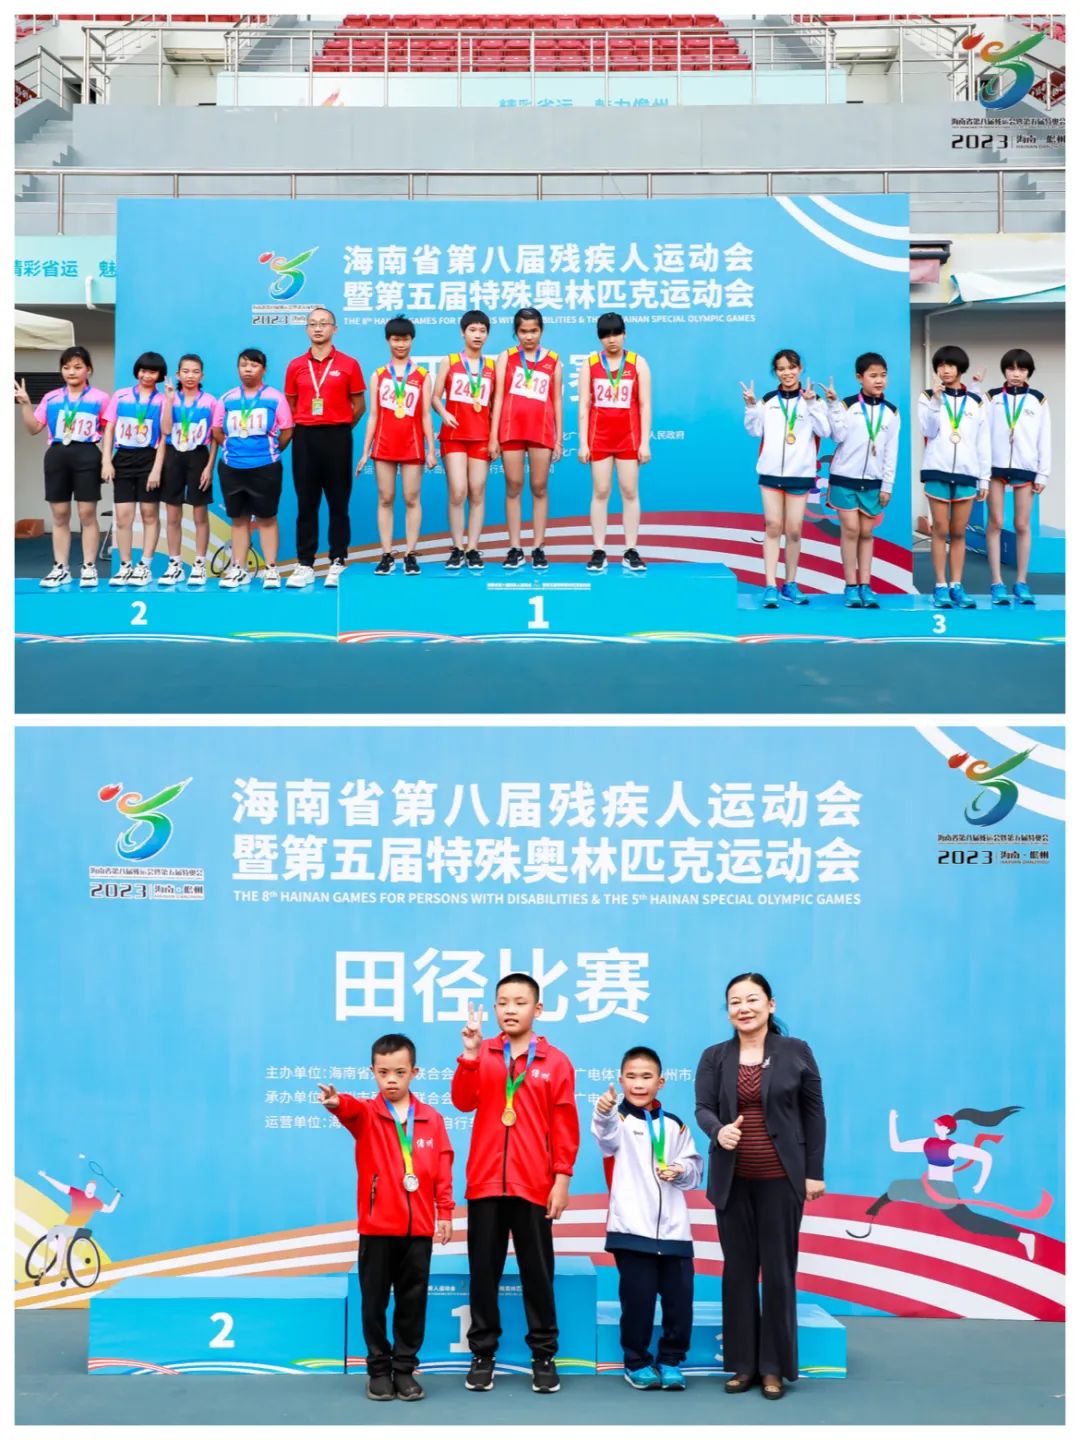 祝贺陵水代表团参加海南省第八届残疾人运动会暨第五届特殊奥林匹克运动会载誉归来